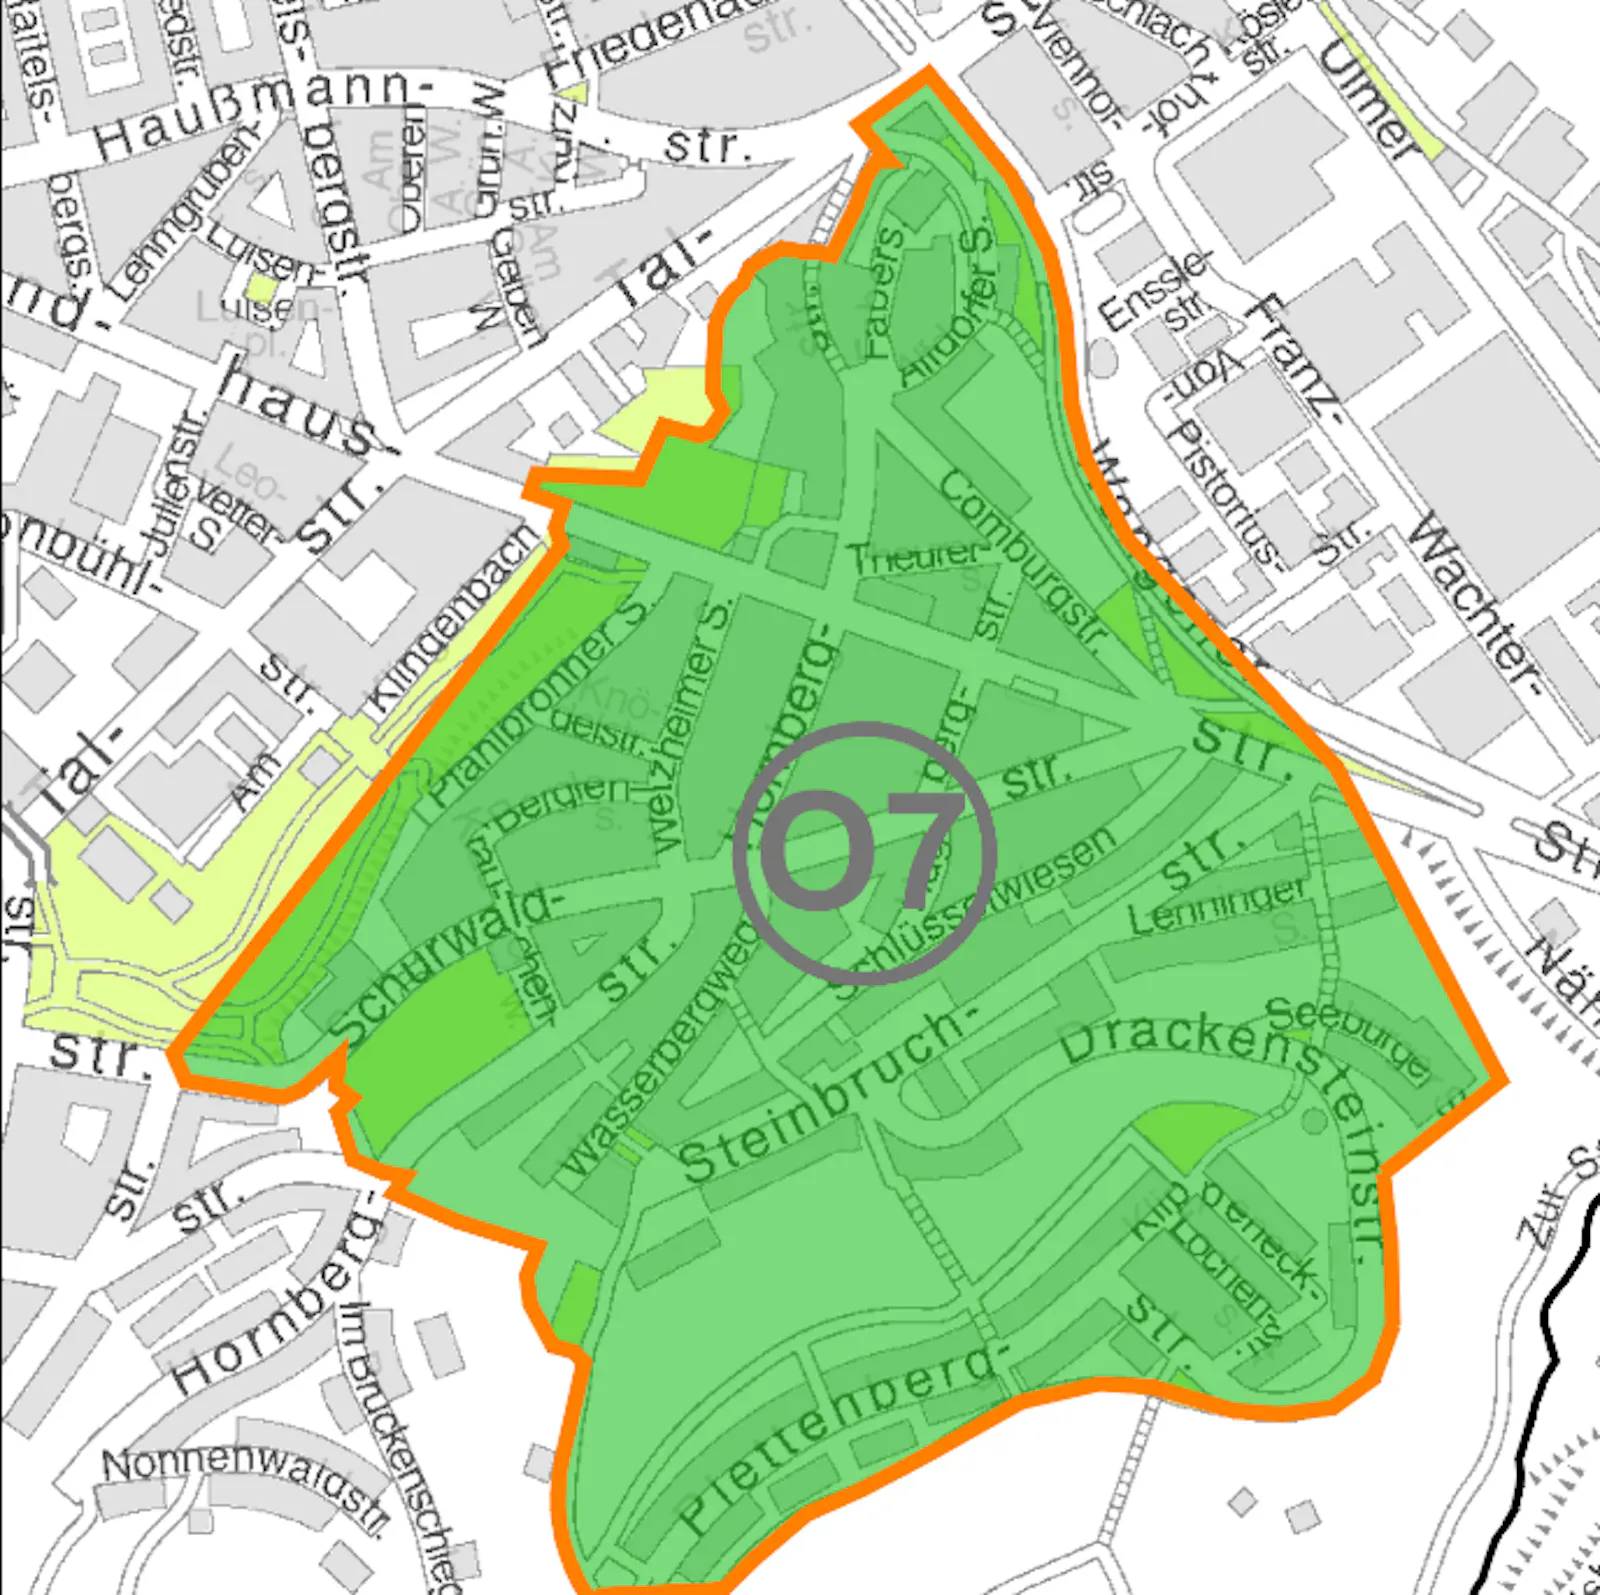 Gaisburg und der Plettenberg bekommen Parkraummanagement. Karte: Landeshauptstadt Stuttgart